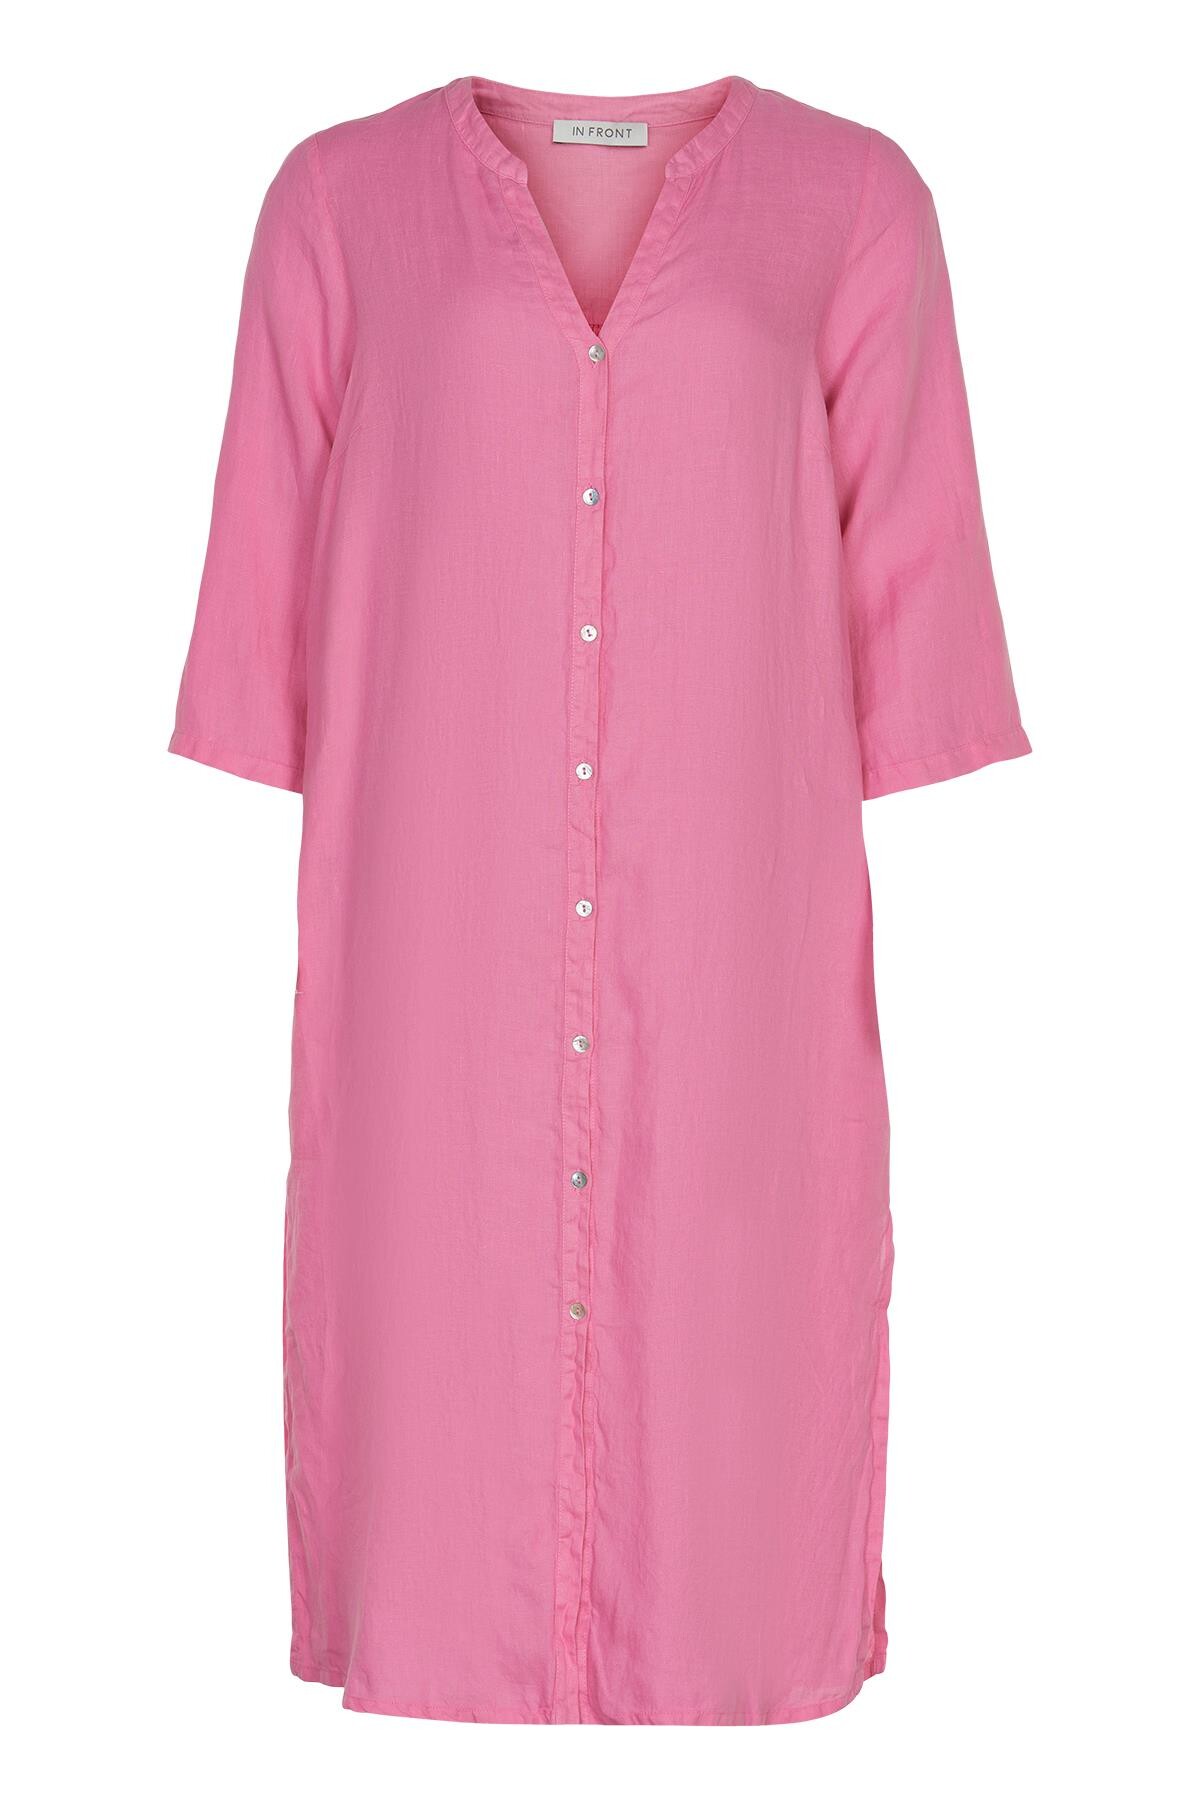 Se IN FRONT Lino Lang Skjortekjole, Farve: Pink, Størrelse: S, Dame hos Infront Women